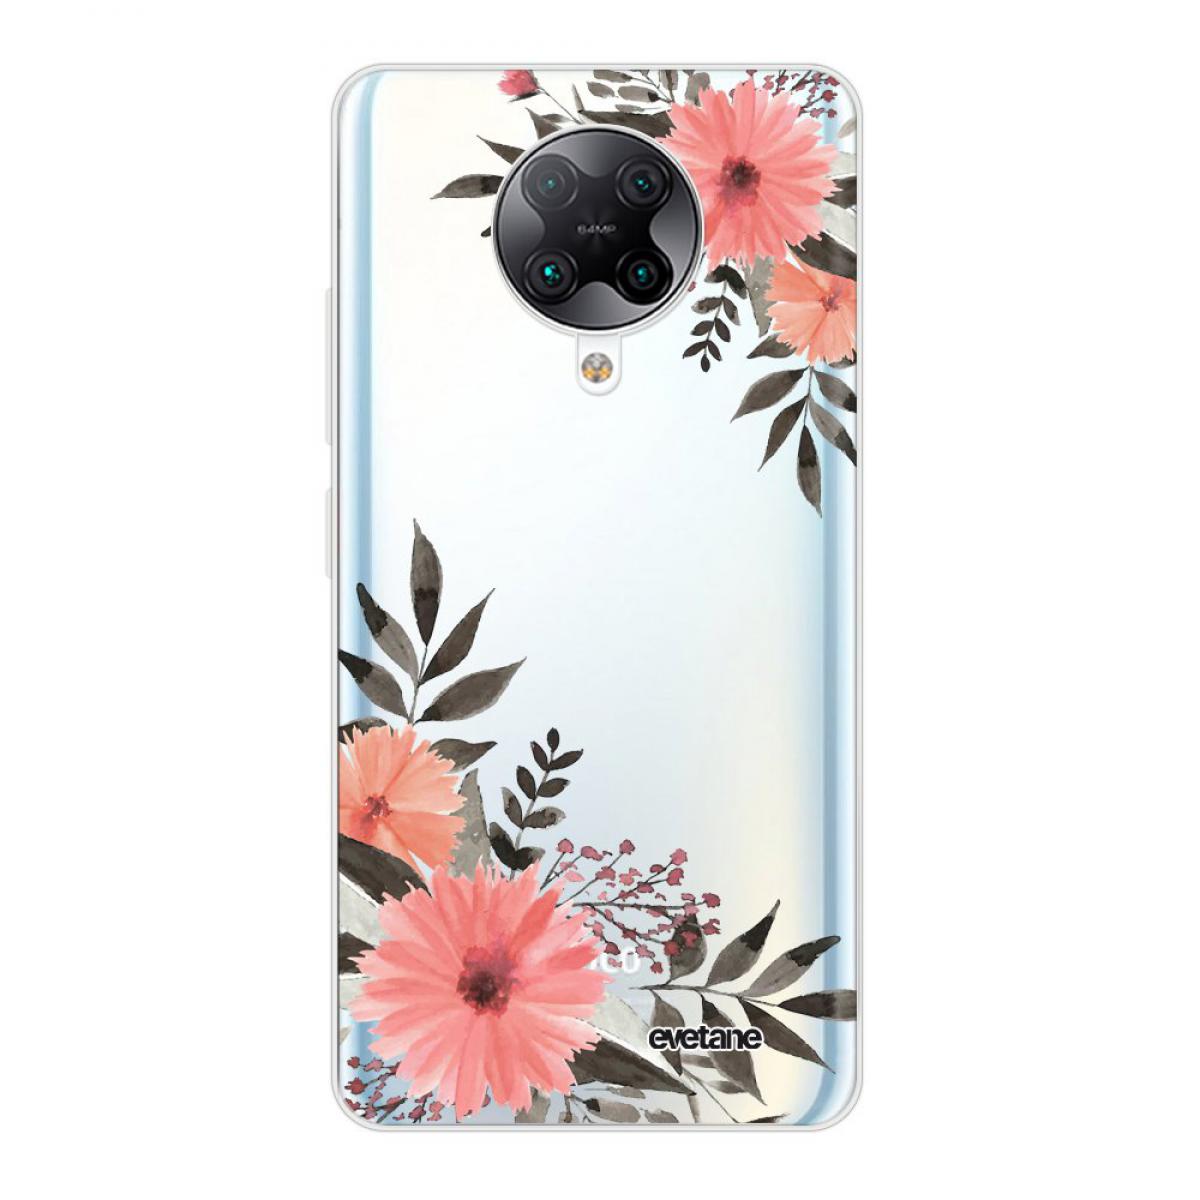 Evetane - Coque Xiaomi Poco F2 Pro souple transparente Fleurs roses Motif Ecriture Tendance Evetane - Coque, étui smartphone